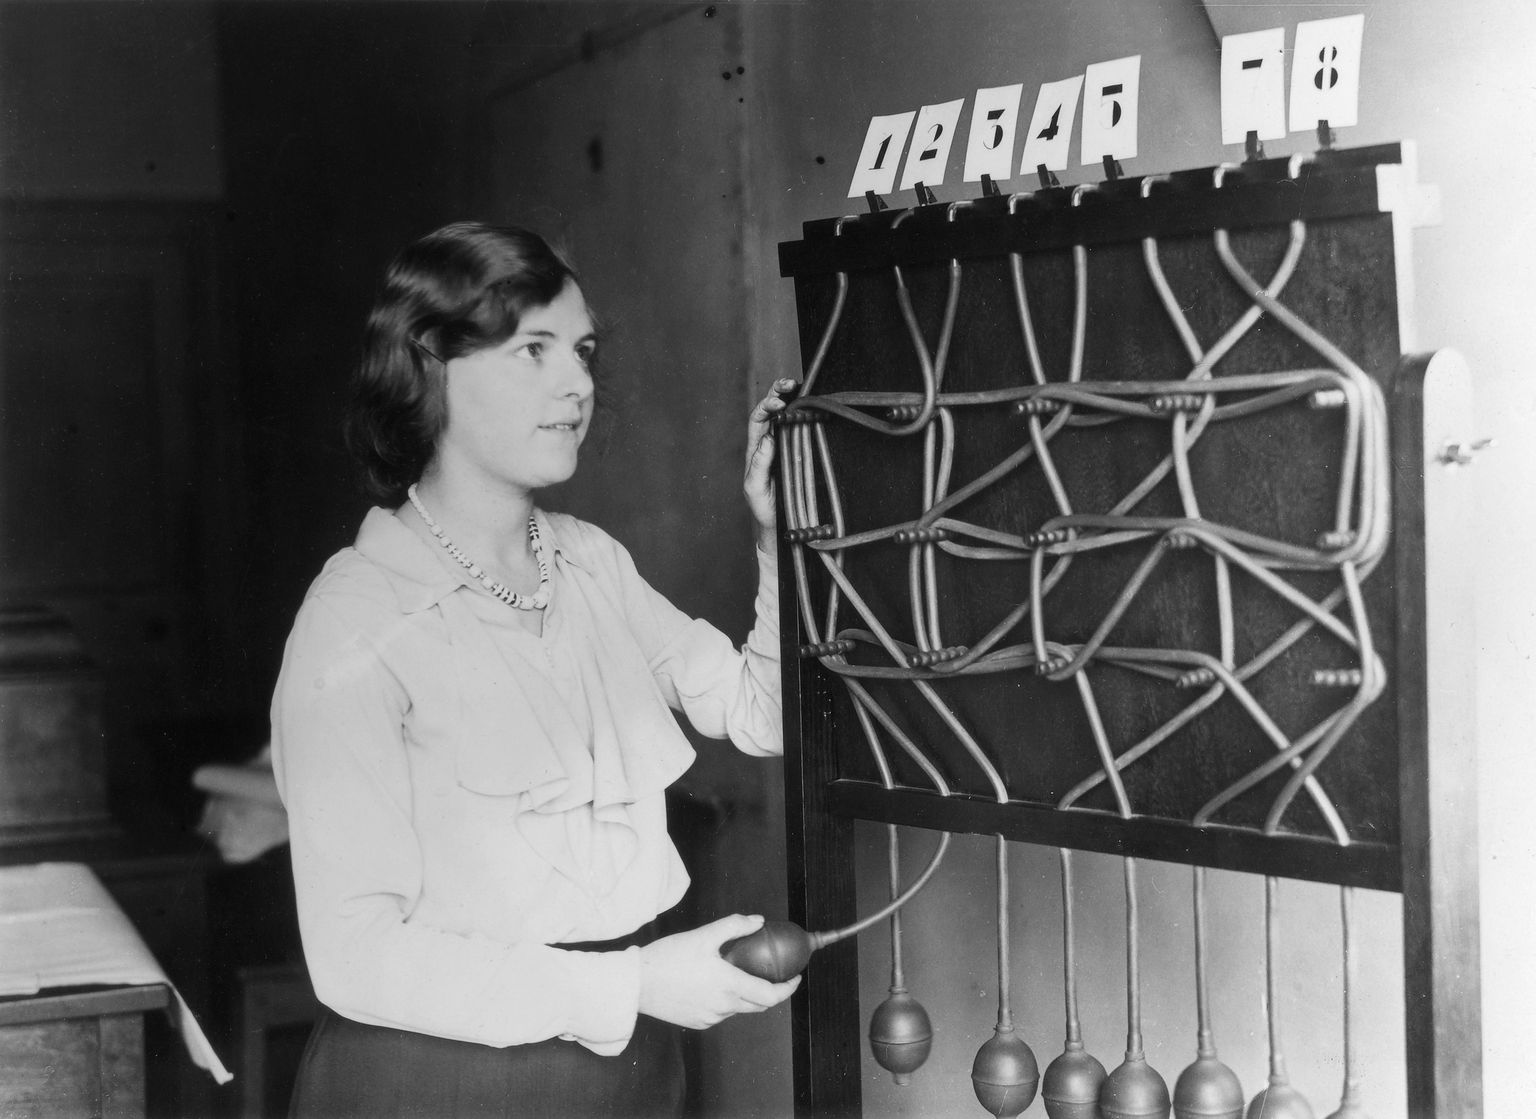 Pilt on illustreeriv: test, millega mõõdeti ajutegevuse kiirust. Kui keegi hüüdis mõne numbri, pidi katsealune võimalikult kiiresti õige pirni sisse lülitama. Pilt on tehtud 1930-ndatel Londoni psühholoogia instituudis.